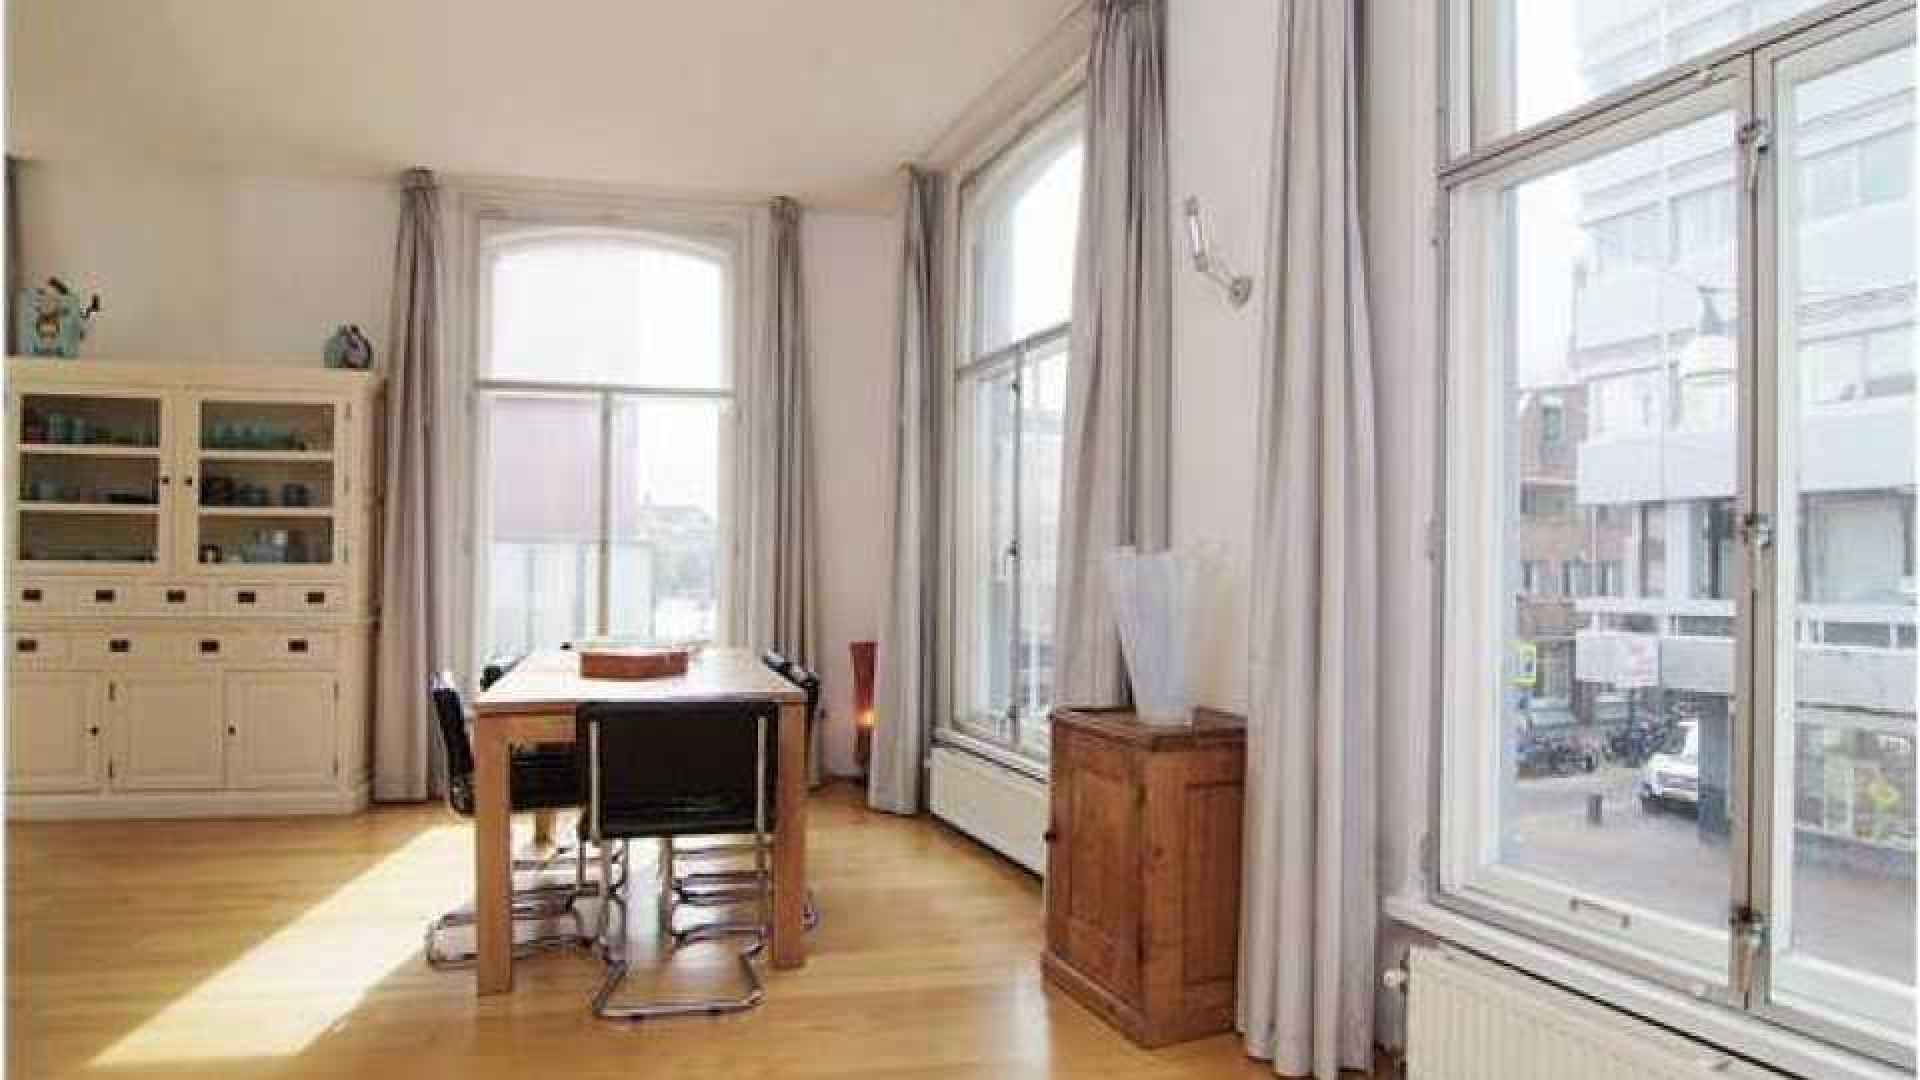 Charles Groenhuijsen huurt leuk appartement in centrum van Utrecht. Zie foto's